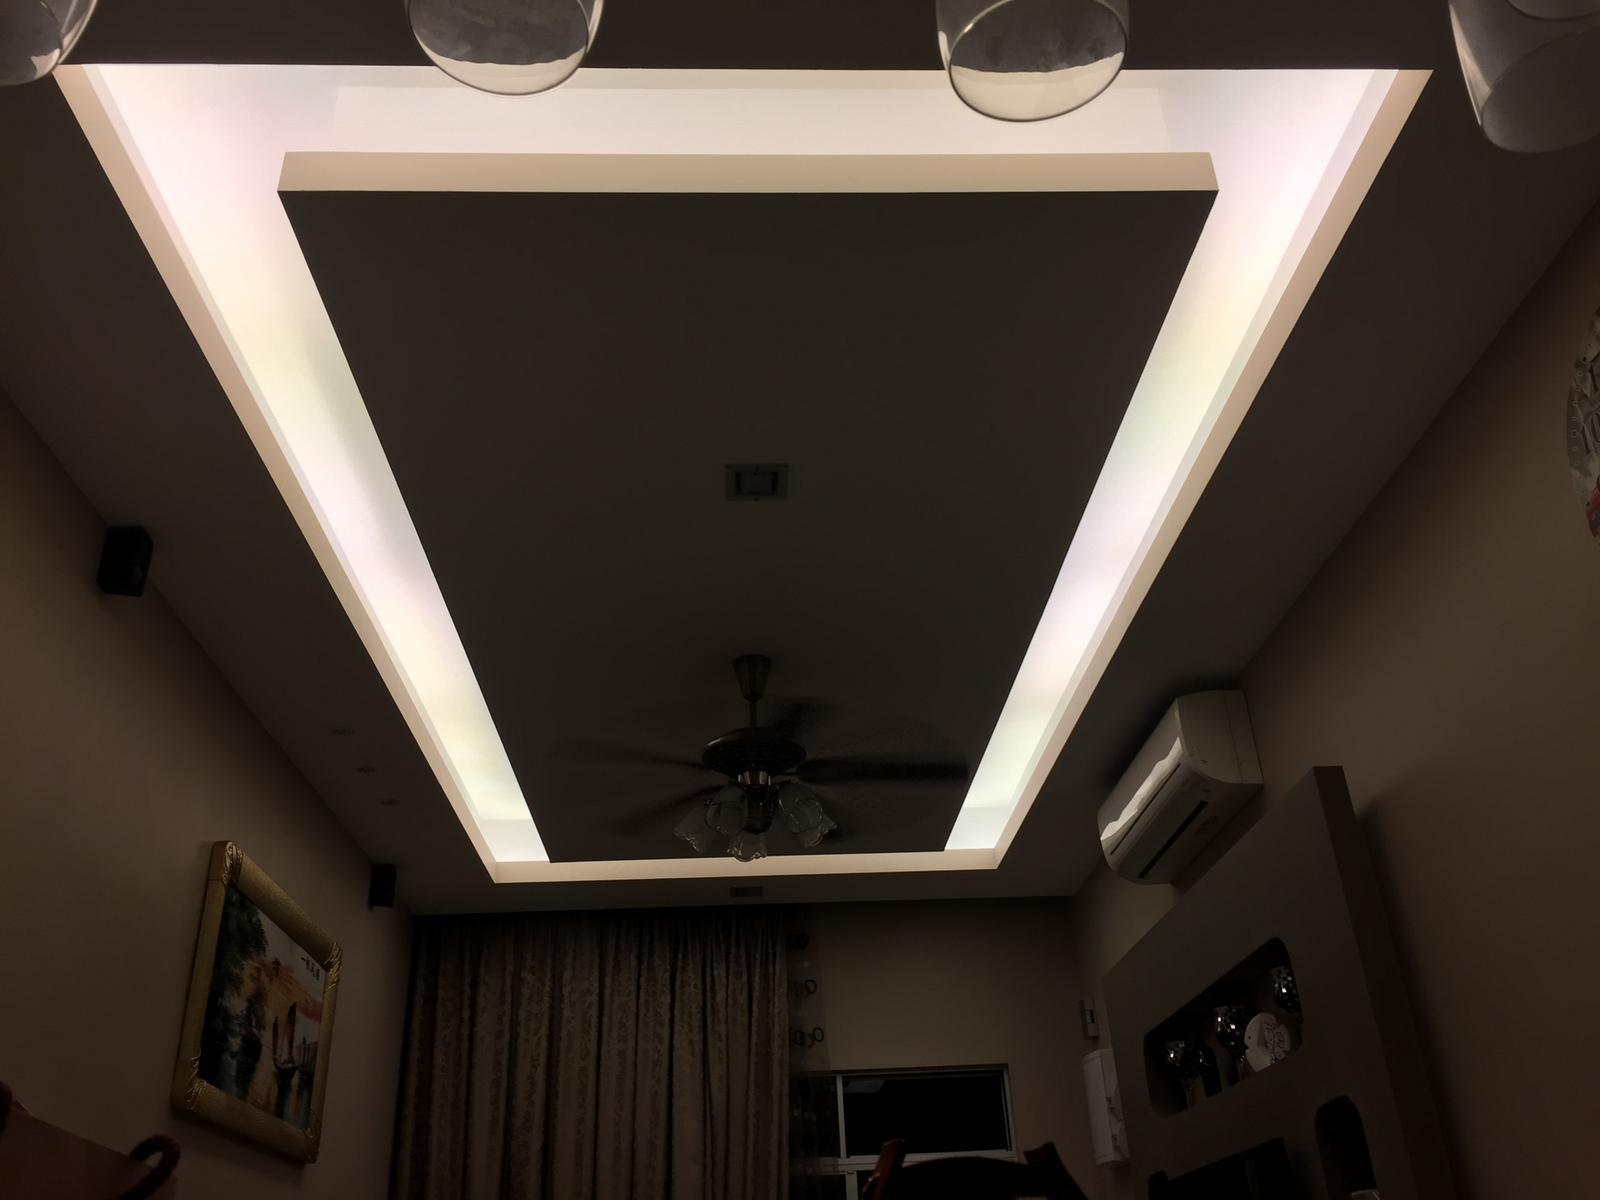 plaster ceiling for living room